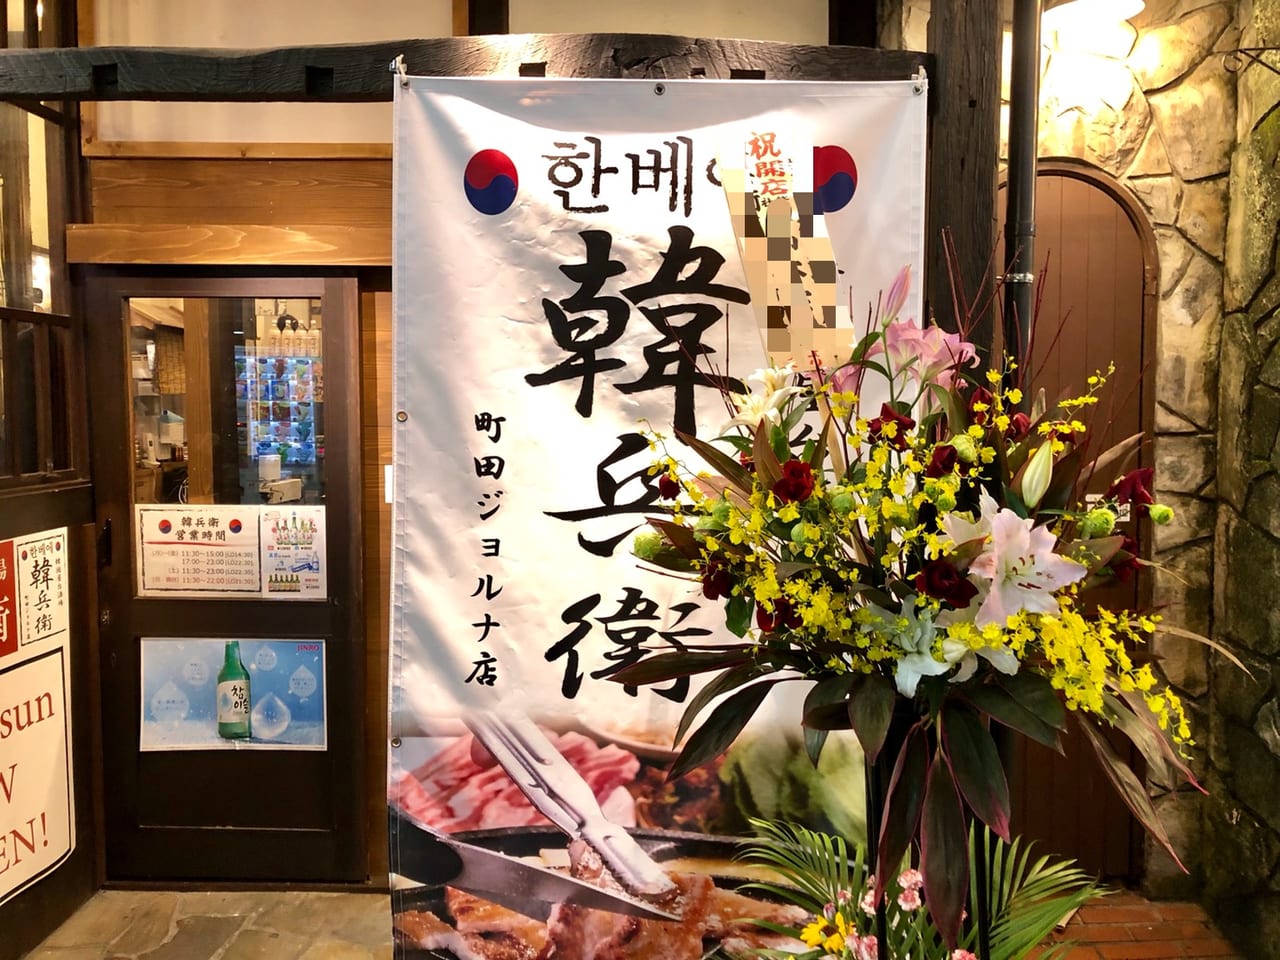 町田市 町田ジョルナ1fに韓国料理居酒屋が11 1オープンしていました その名も 韓兵衛 町田ジョルナ店 号外net 町田市